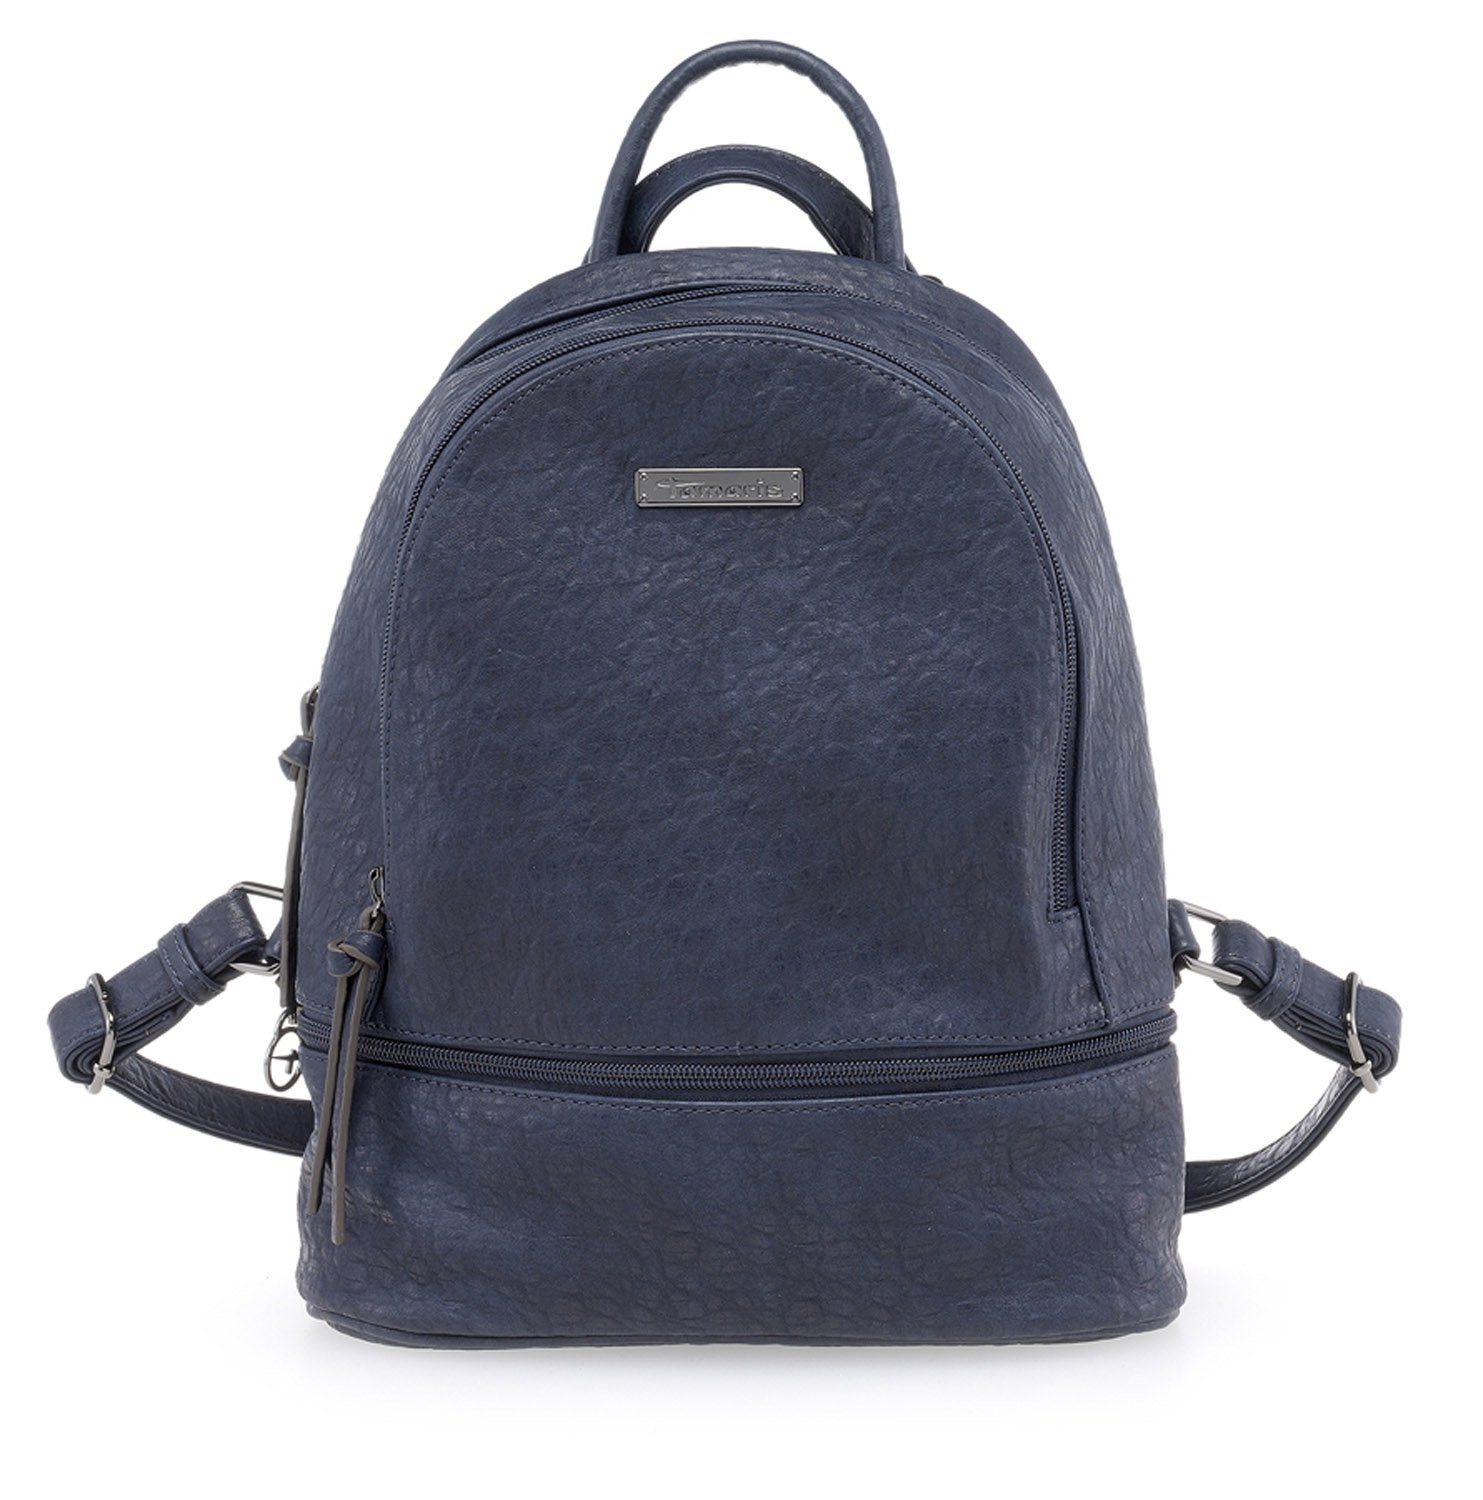 Handbag Tamaris blau navy Udele Backpack Rucksack Damen Handtasche (Set),